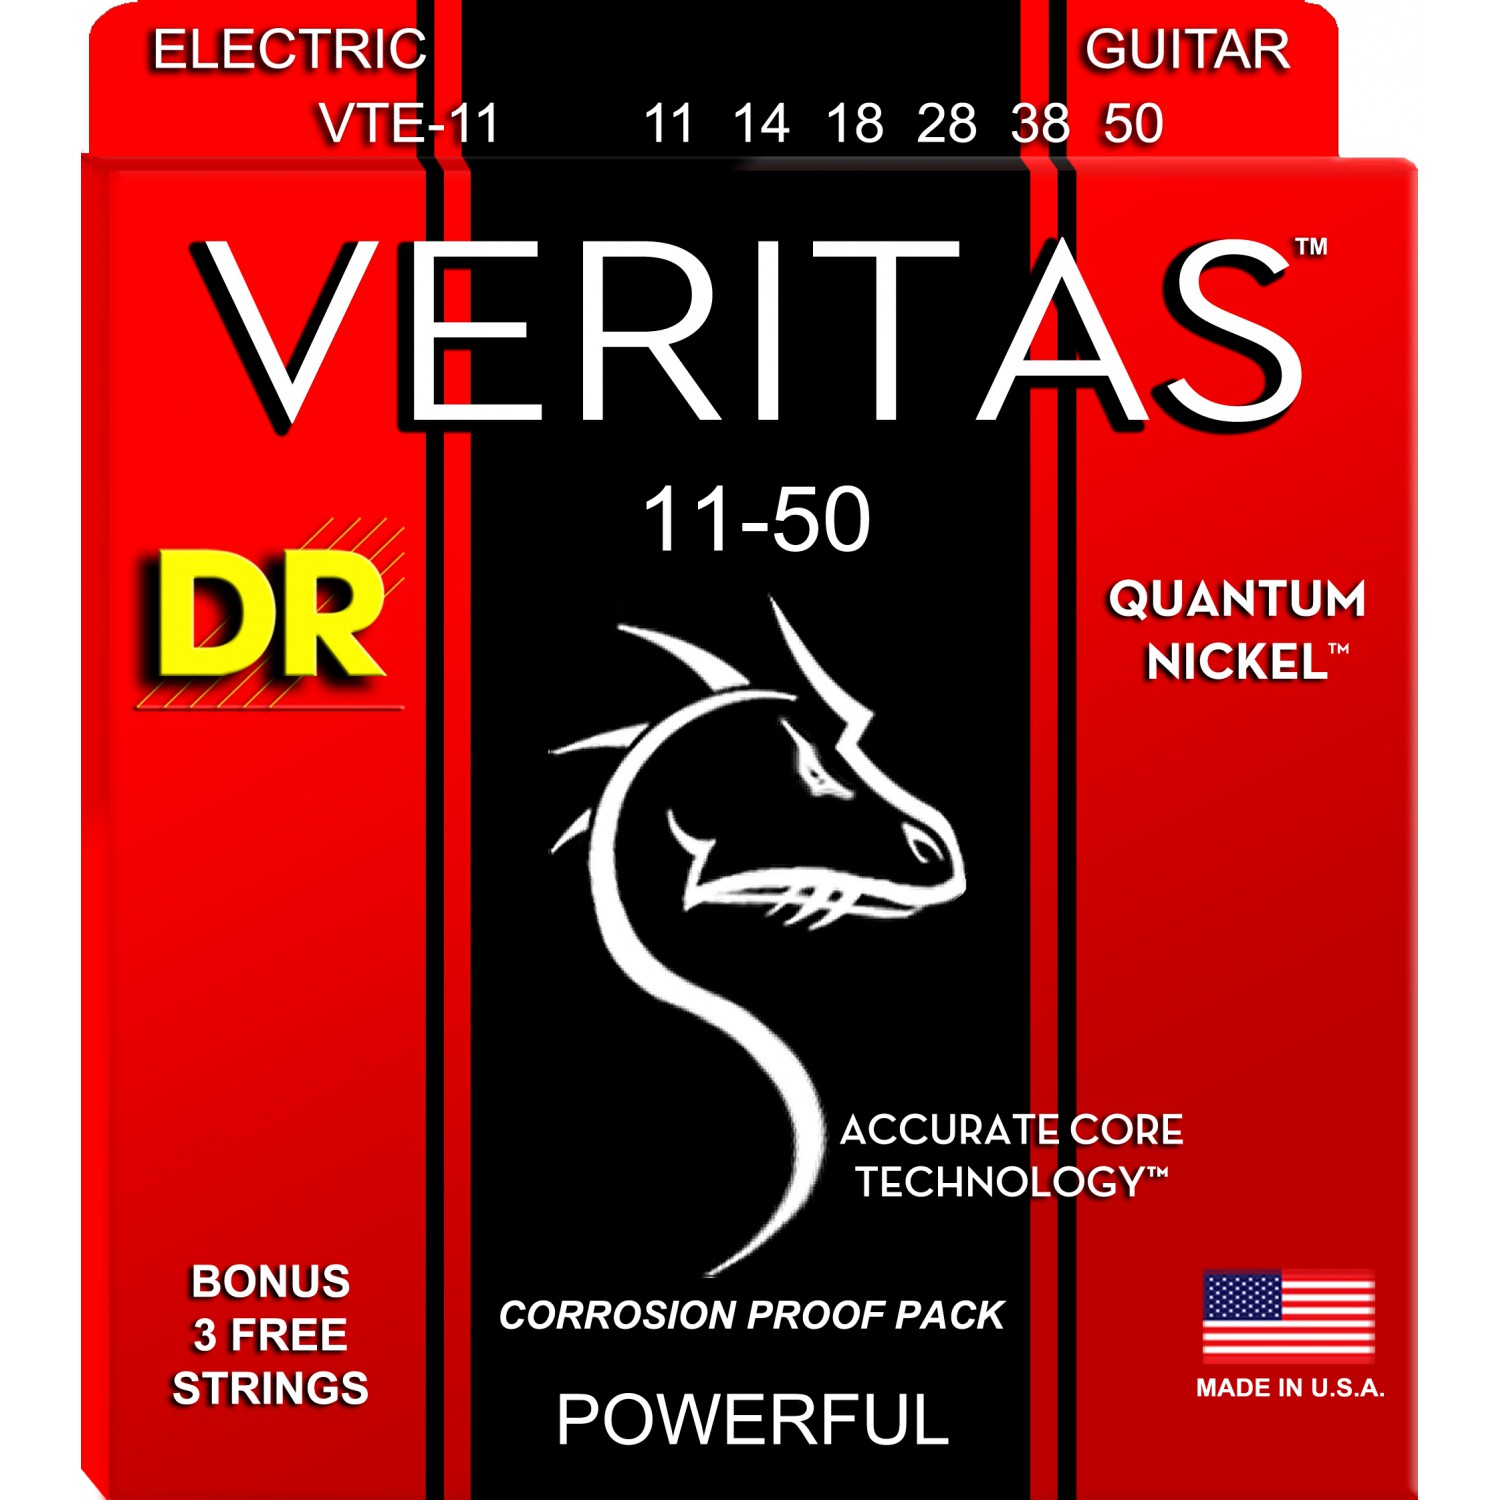 DR VERITAS Quantum Nickel - VTE-11 - struny do gitary elektrycznej Set, Heavy, .011-.050